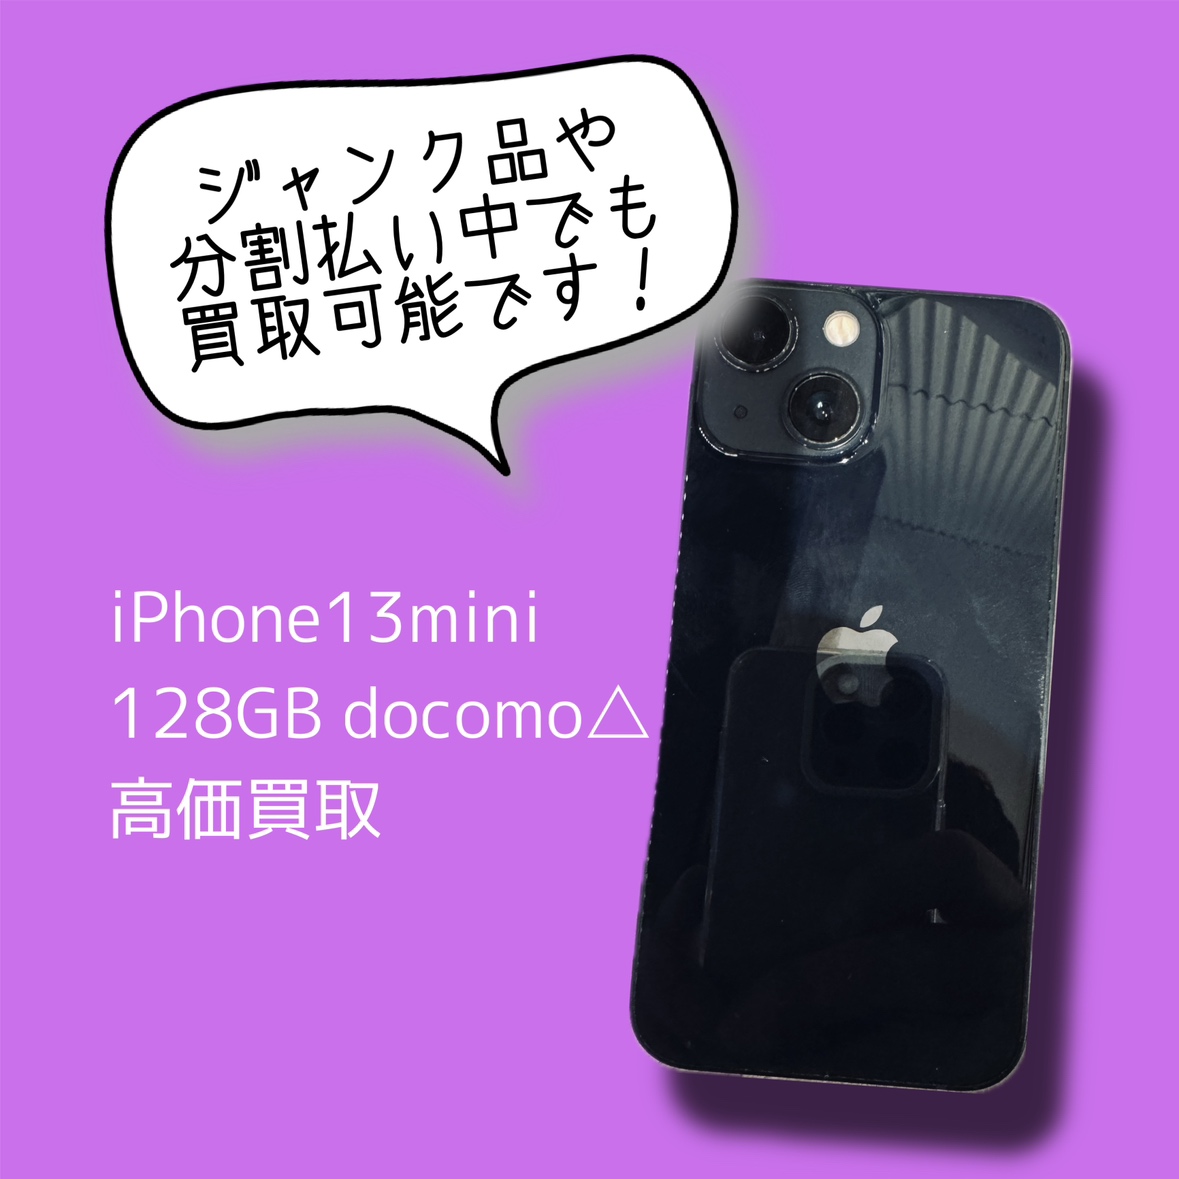 iPhone13mini 128GB docomo△ Cランク品【渋谷店】